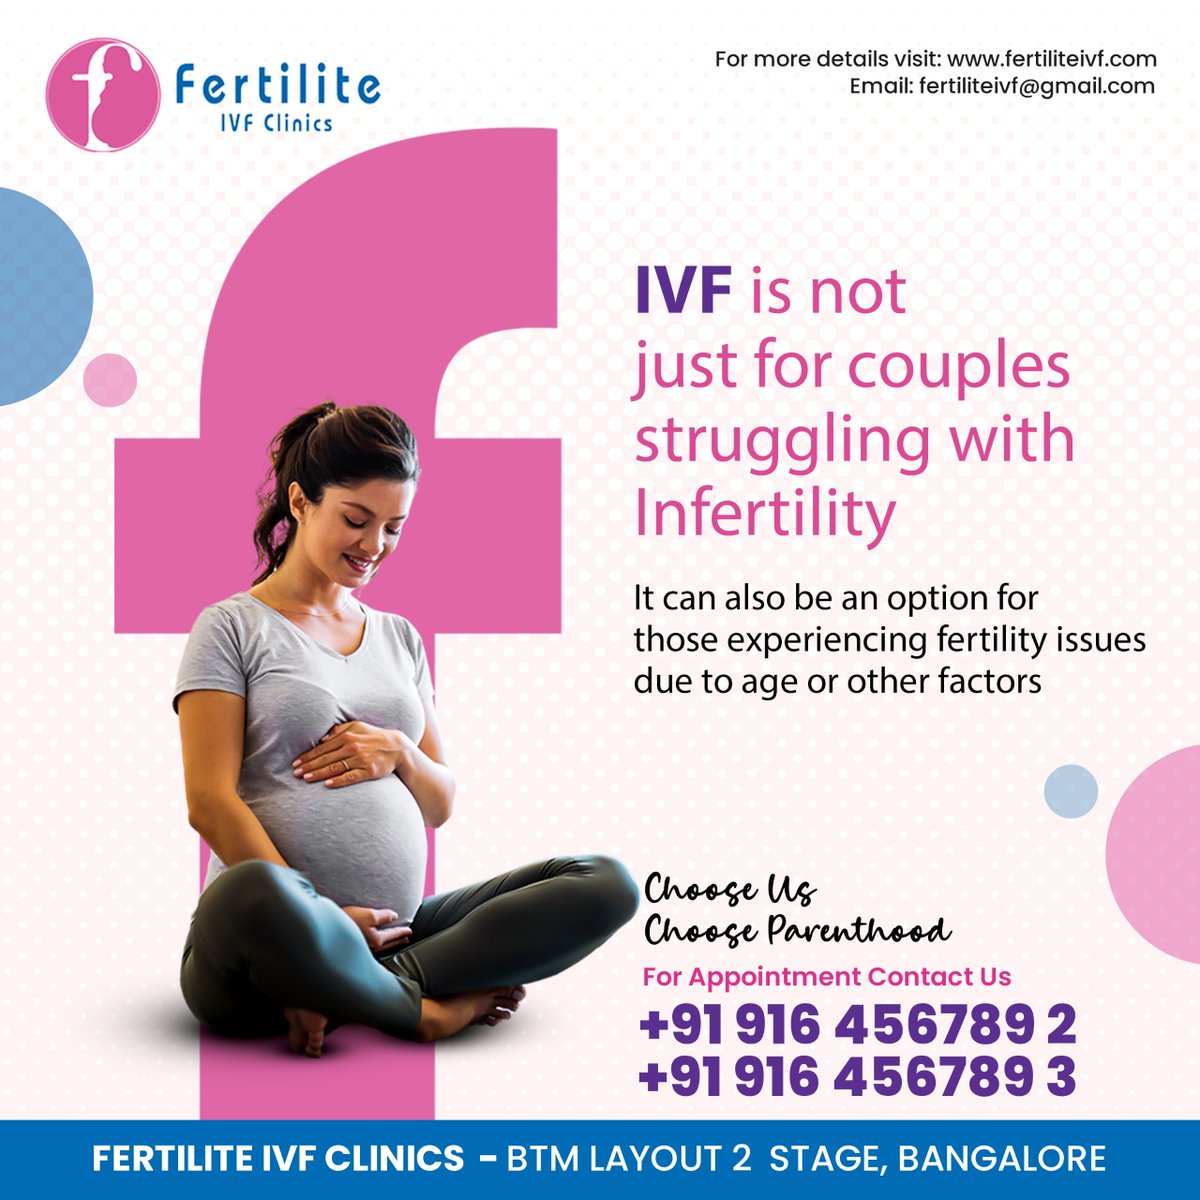 🌱 **Fertilite IVF Clinics** 🌱  
 
📞 **For Appointment Contact Us:**  
+91 9164567892 | +91 9164567893  

*fertiliteivf.com*  
📧 fertiliteivf@gmail.com  

🏥 **Location:**  
FERTILITE IVF CLINICS  
BTM Layout 2 Stage, Bangalore  

#IVF #FertilityTreatment #Parenthood